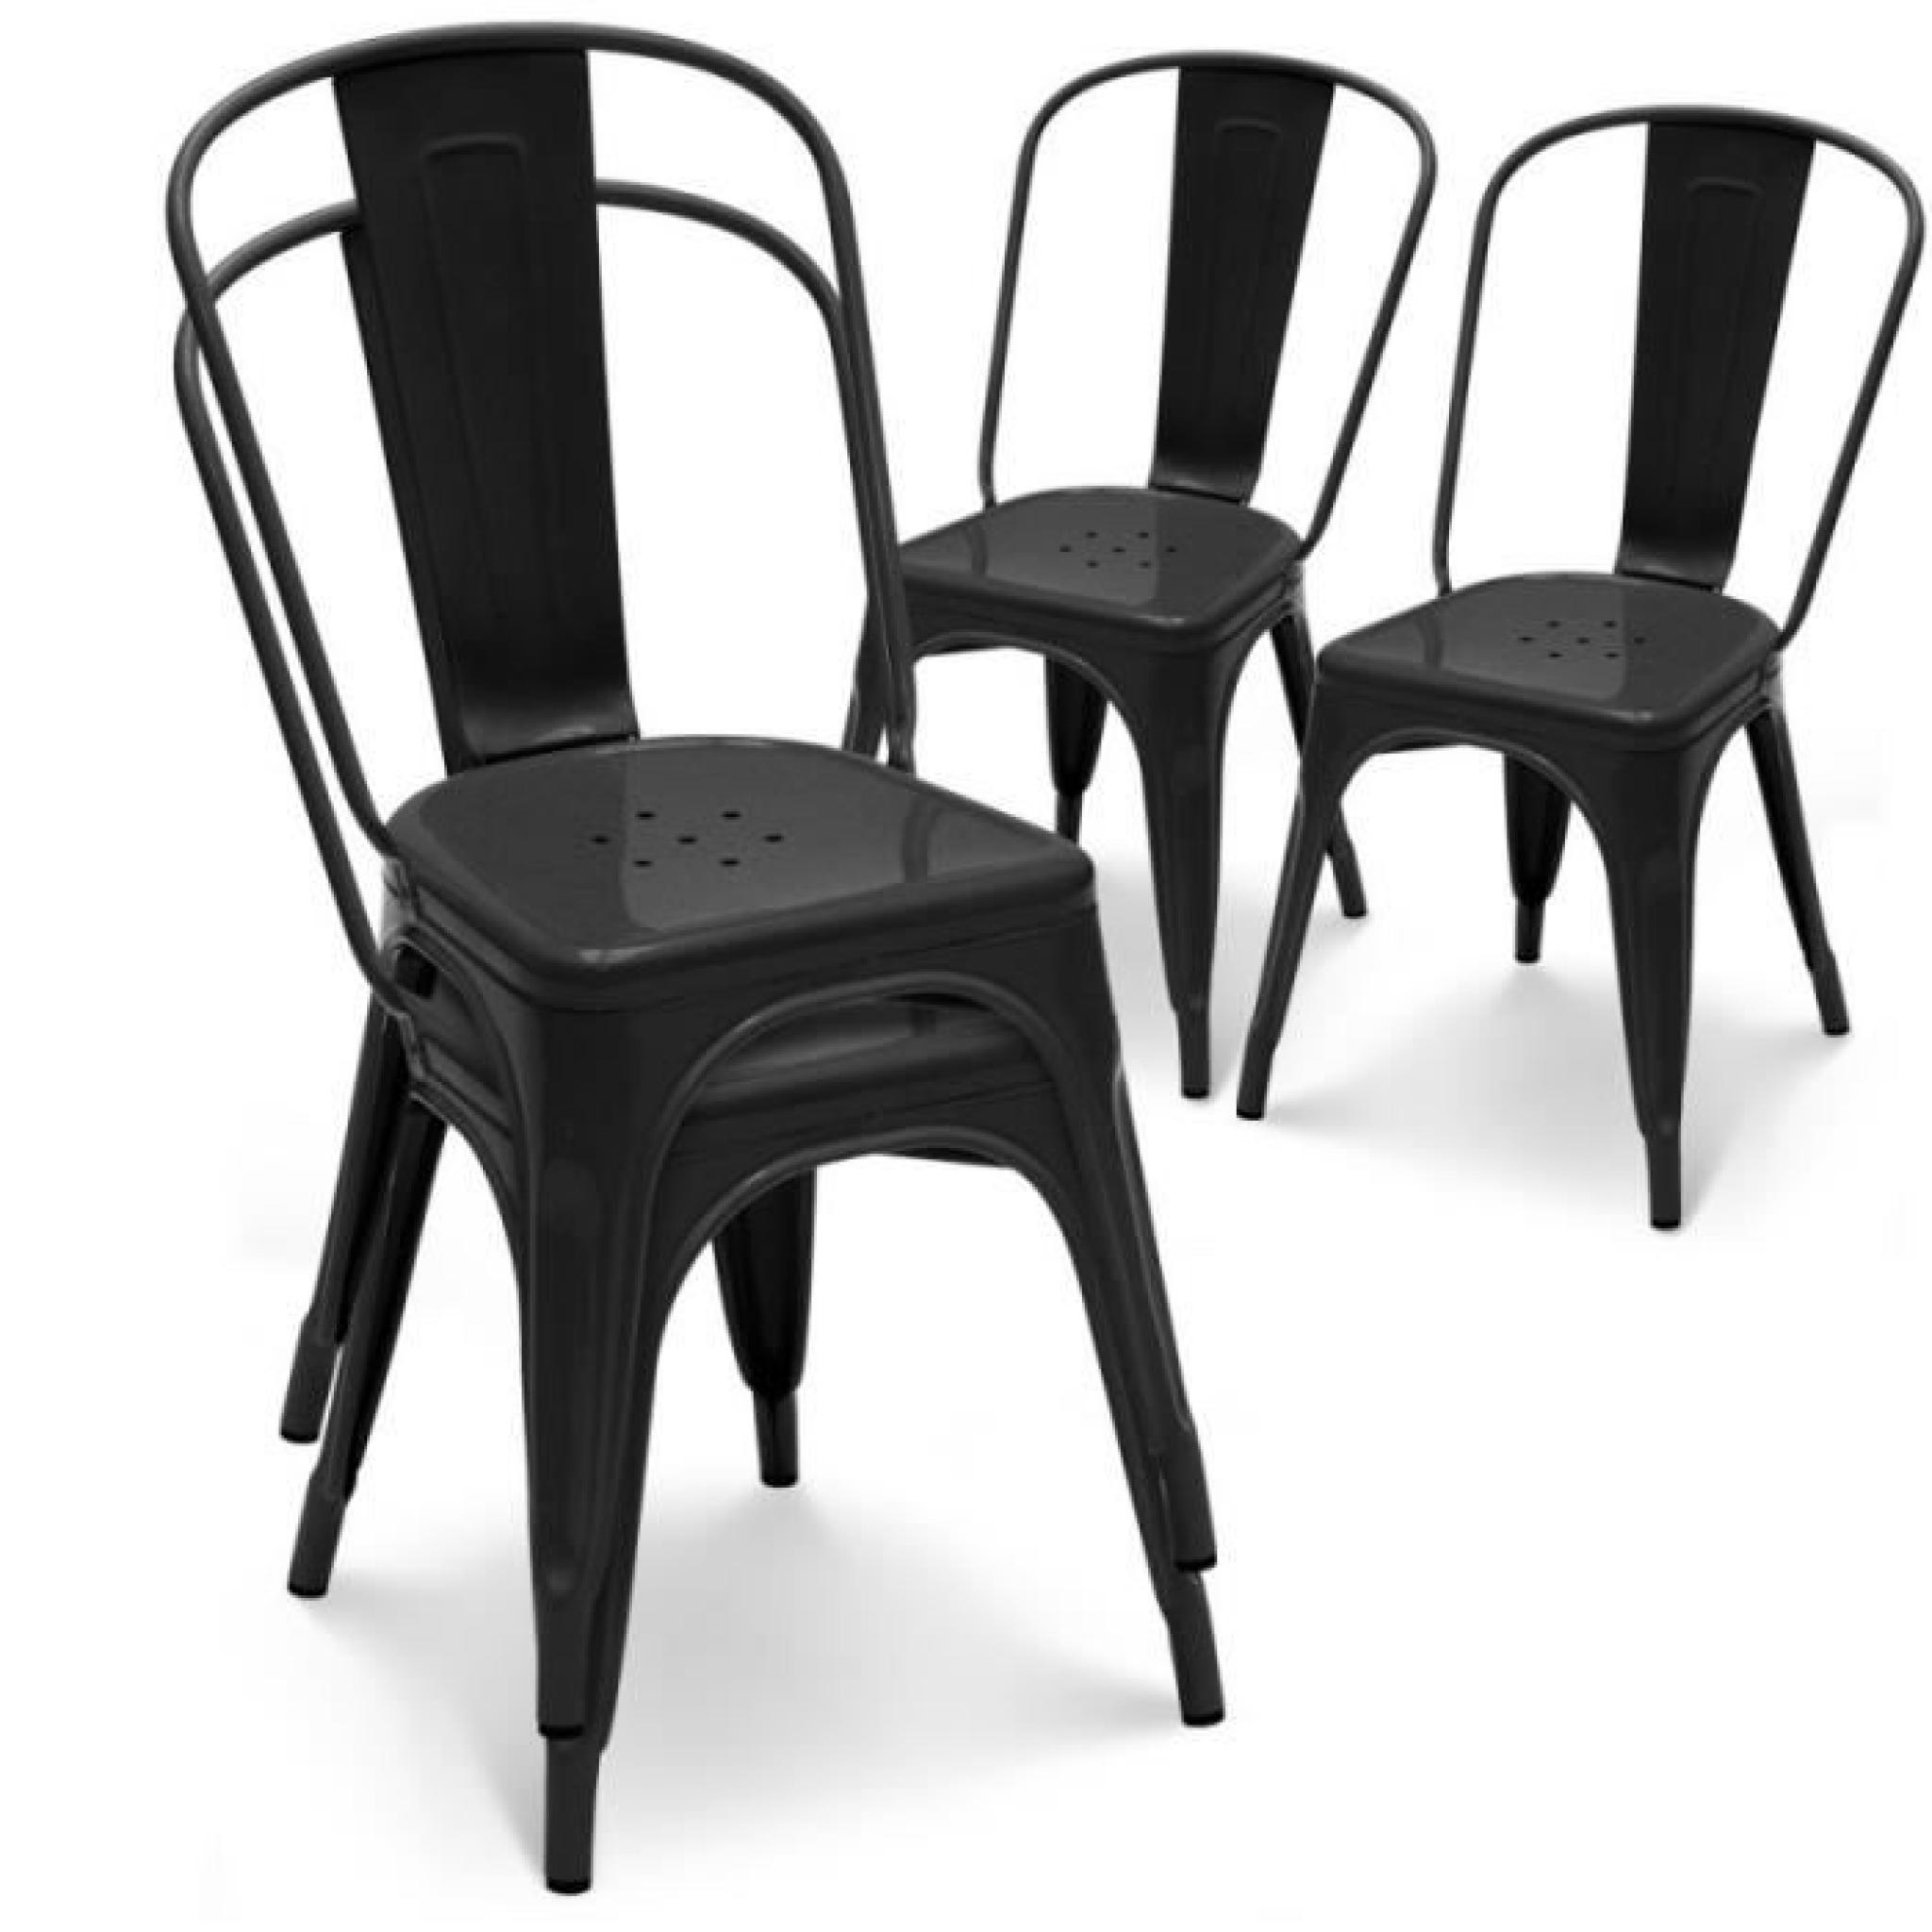 Chaise en métal noir empilable lot de 4